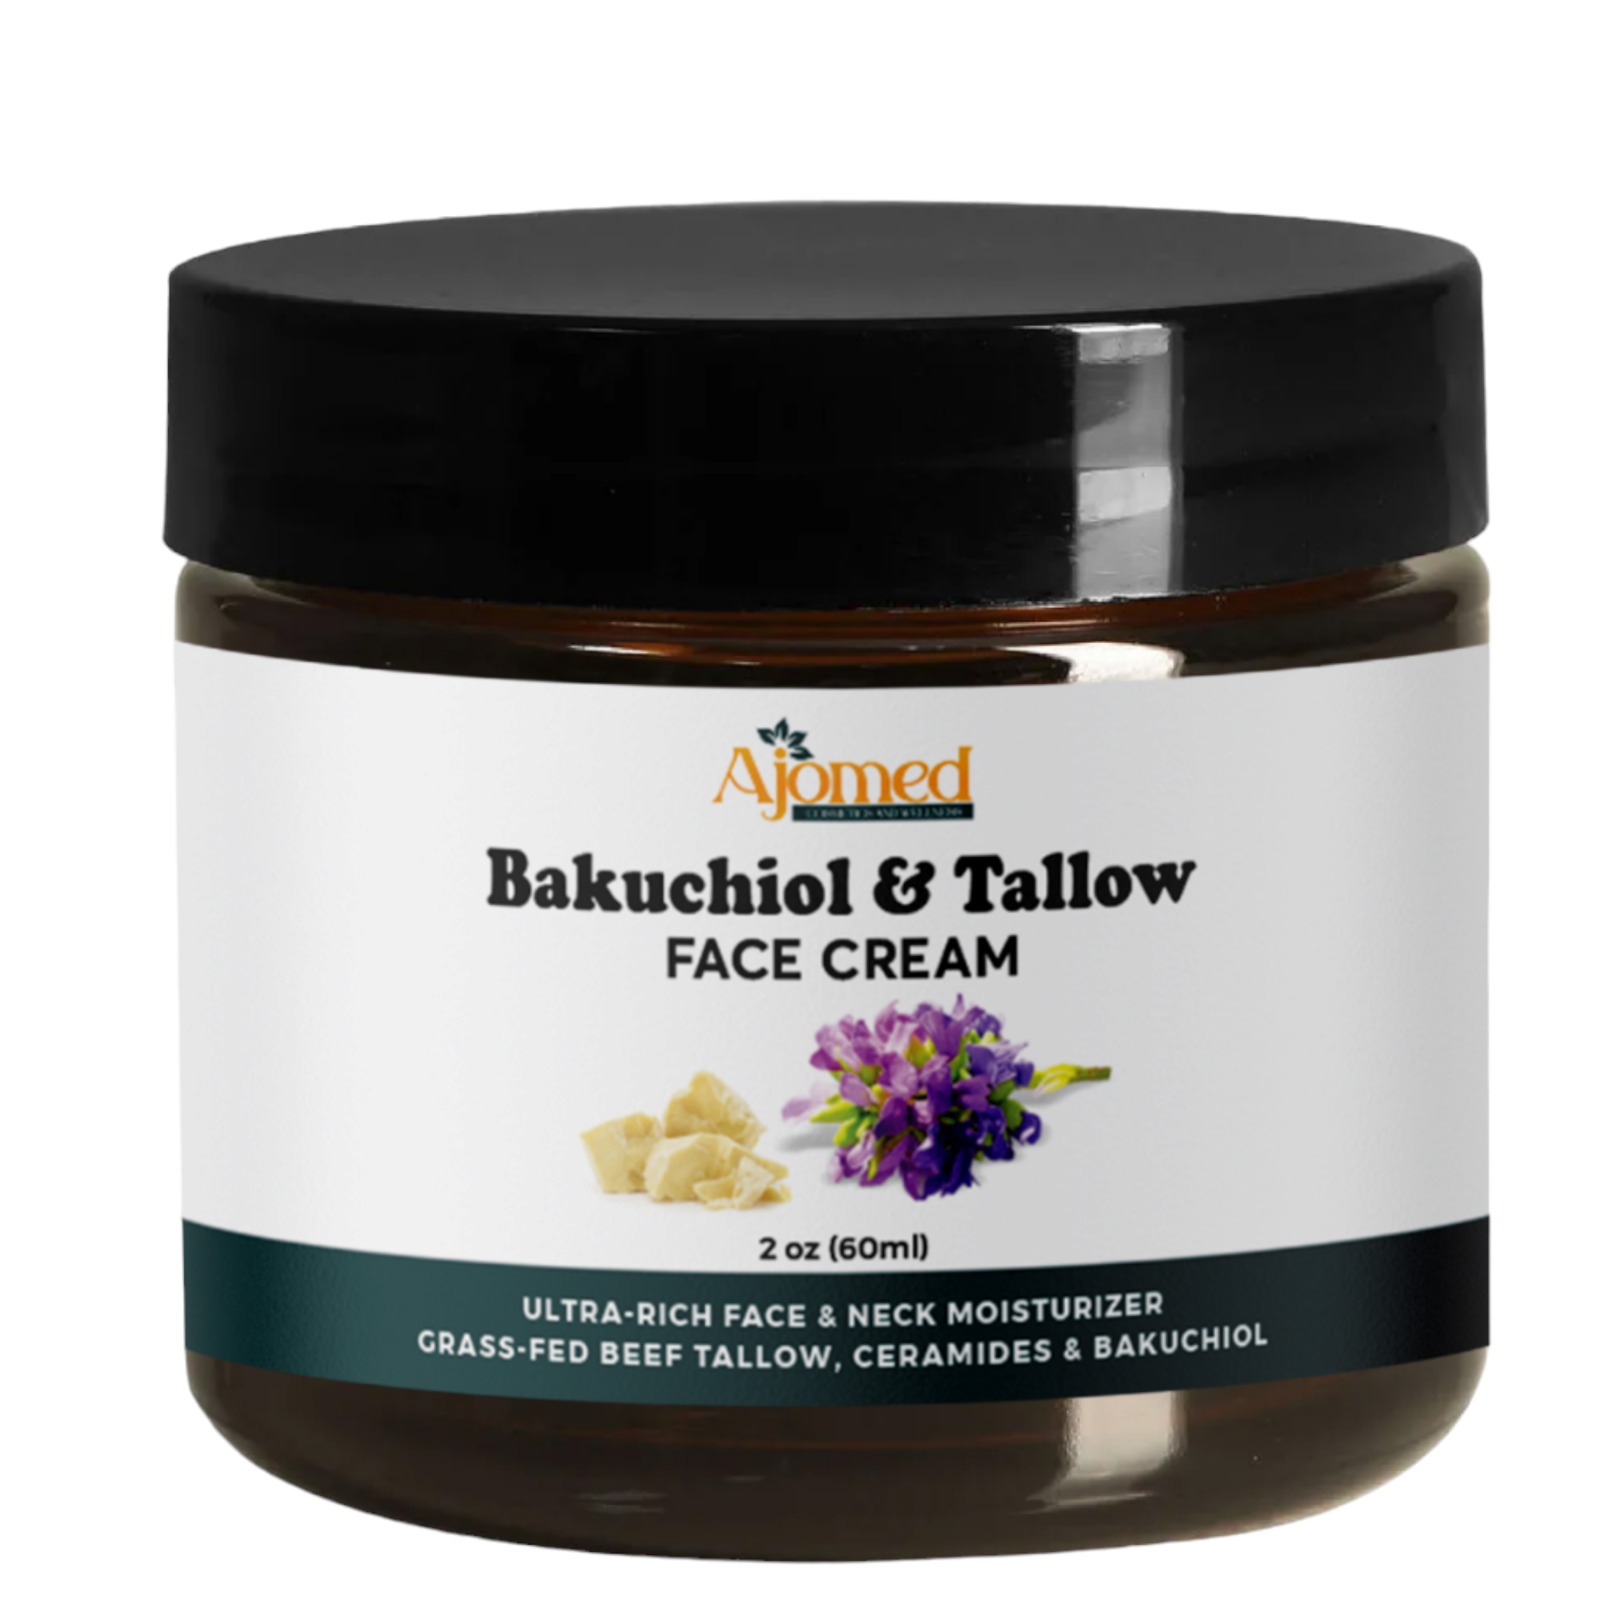 Beef tallow face cream with 2% Bakuchiol oil face moisturizer- Handmade natural